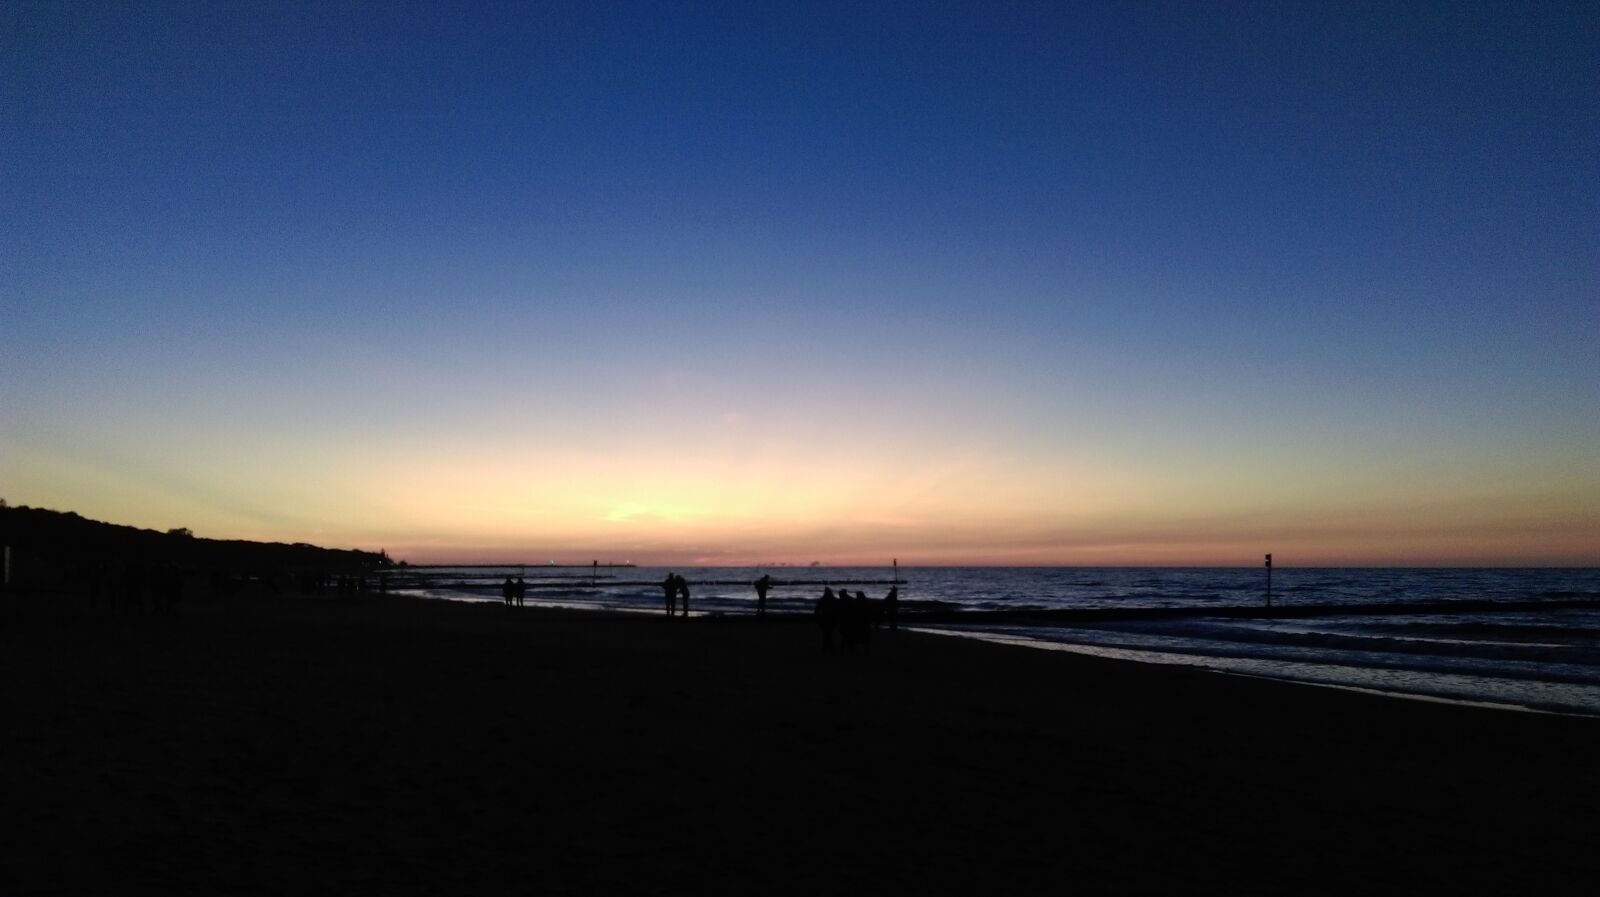 HTC DESIRE 820 sample photo. Sky, sunset, landscape photography